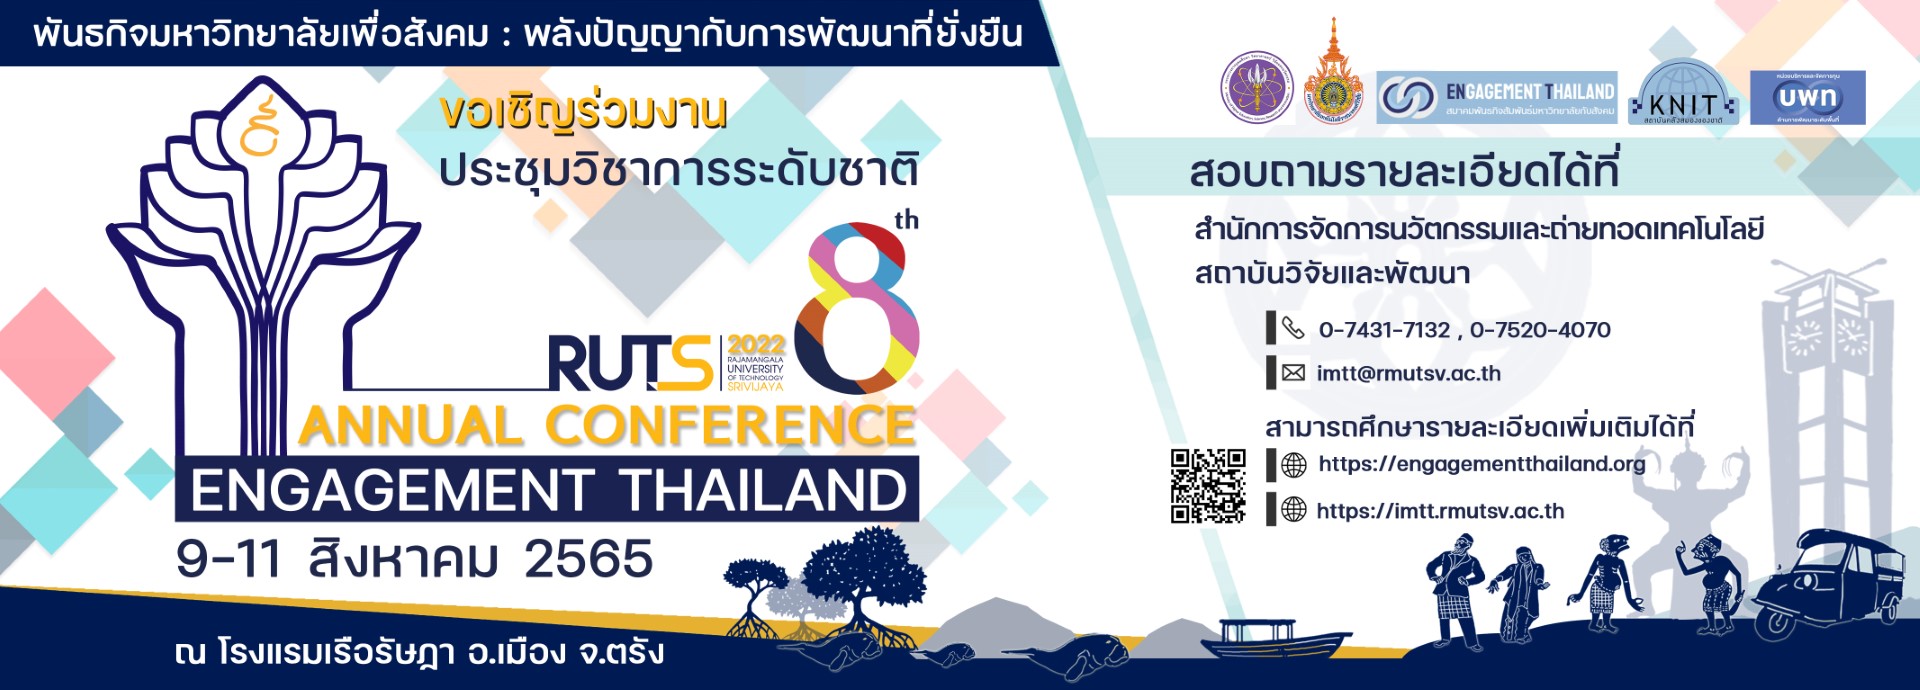 ขอเชิญชวนเครือข่ายร่วมส่งบทความวิชาการรับใช้สังคมในการประชุม วิชาการระดับชาติ Engagement Thailand ครั้งที่ 8